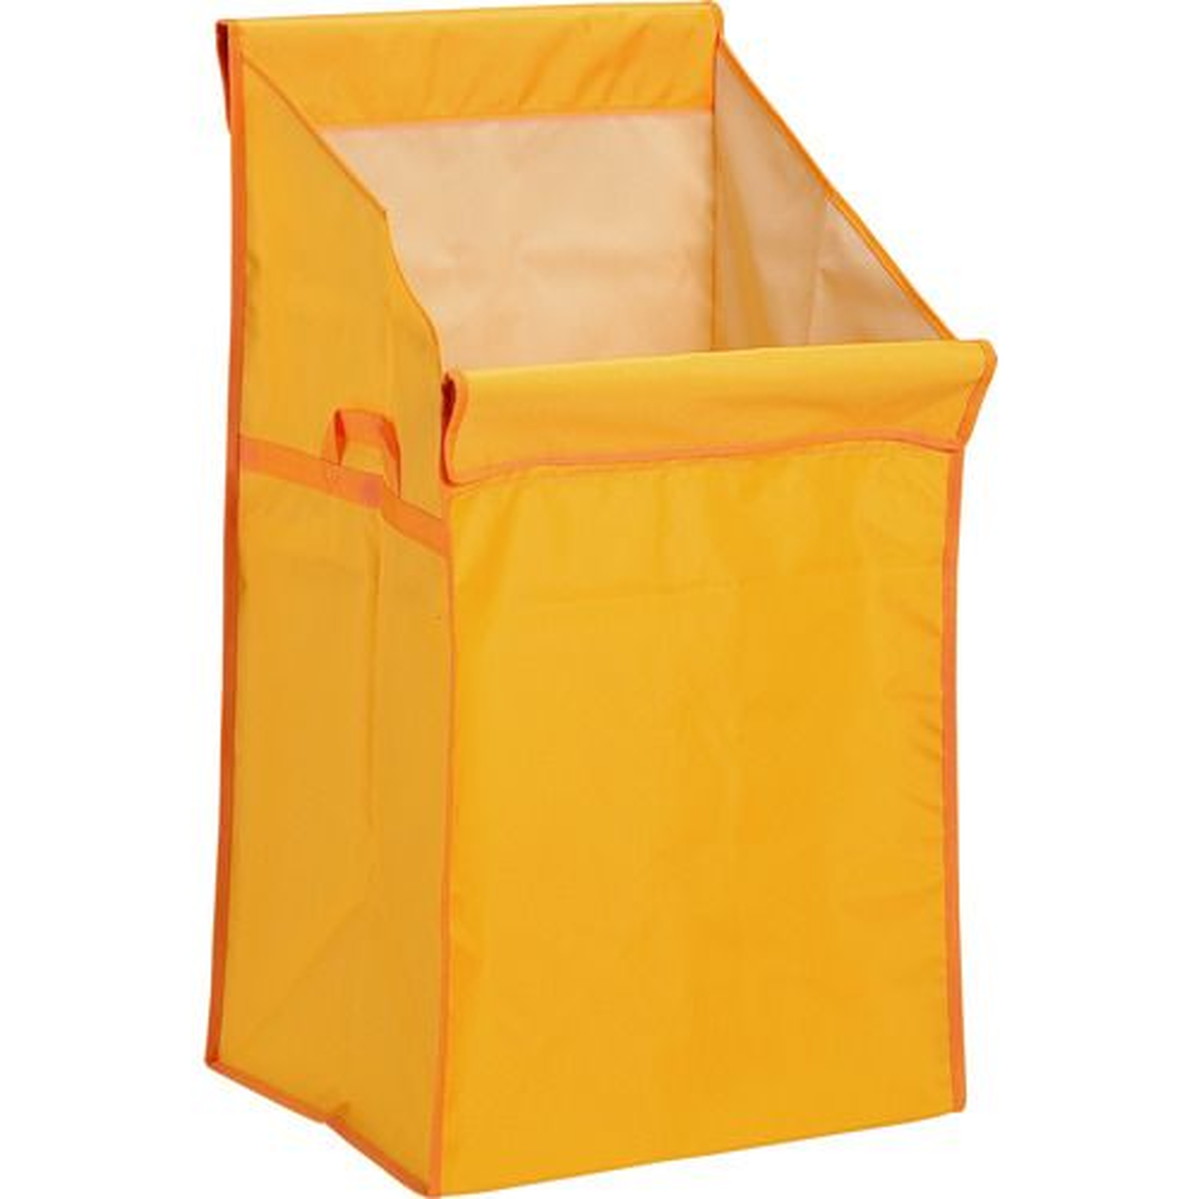 テラモト システムカートＡ（袋Ｅ）黄 1枚 (DS-574-420-5)